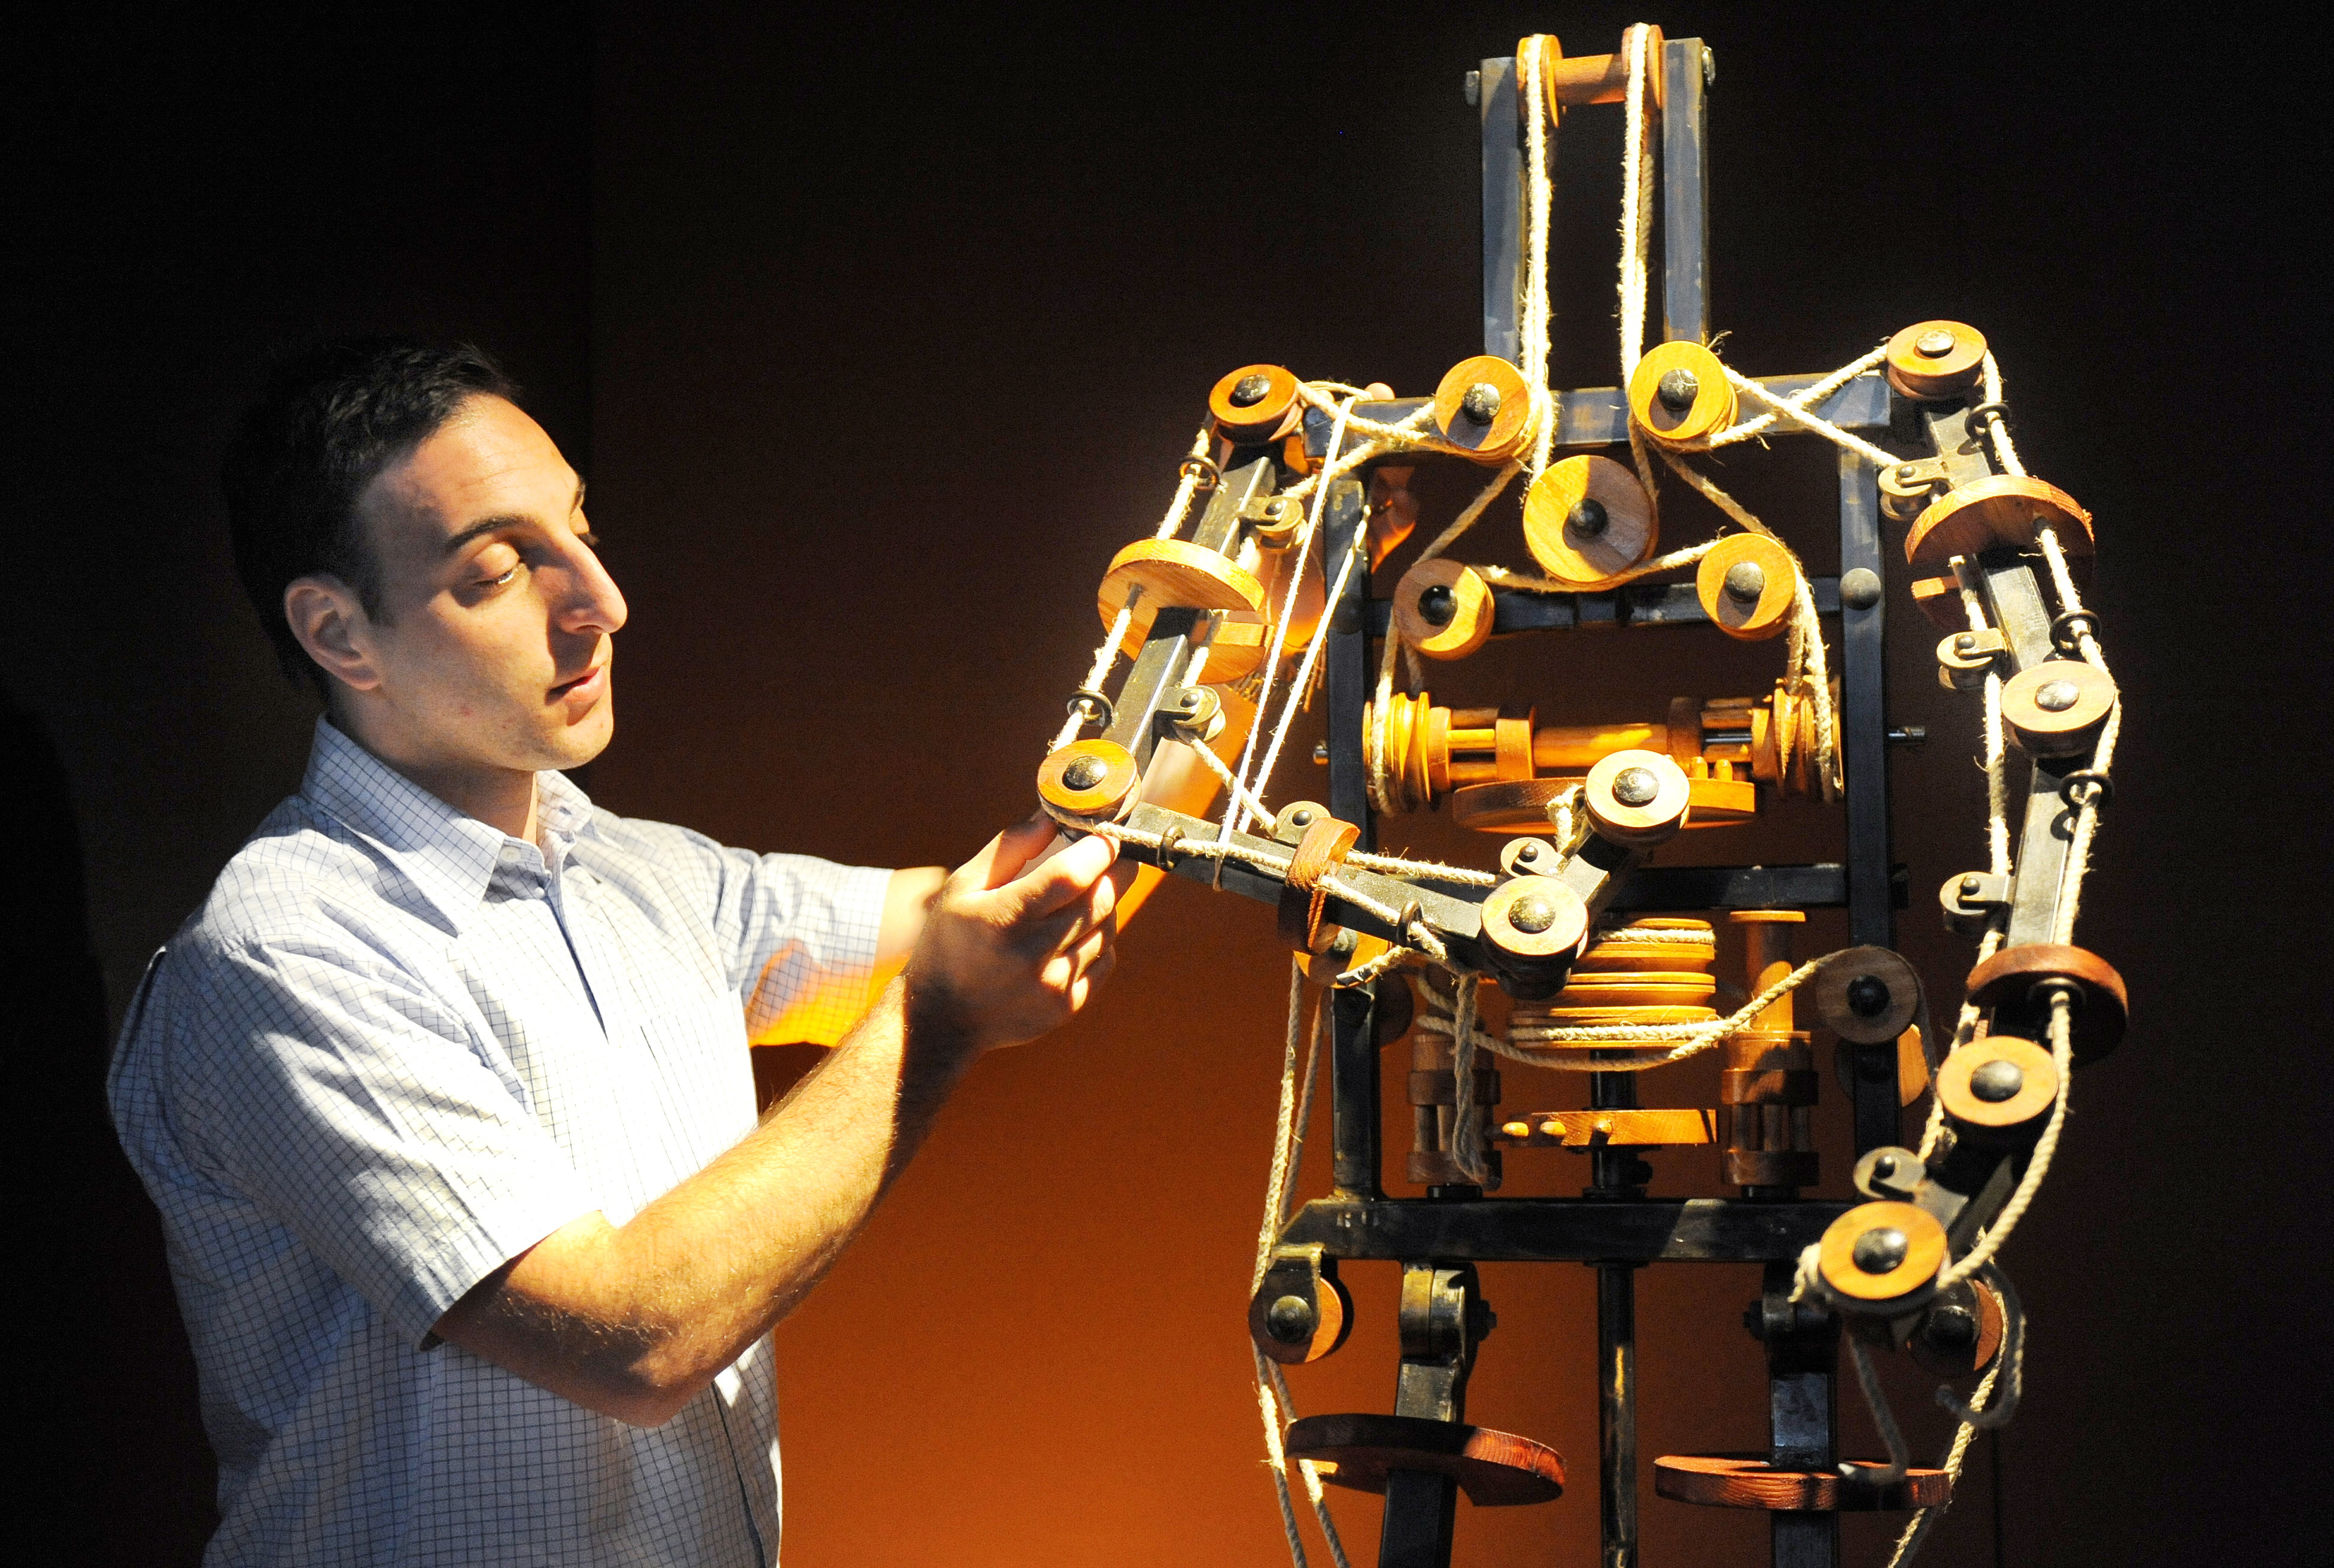 Первый механический прототип робота. Робот Леонардо Давинчи. Робот Леонардо да Винчи 1495. Робот изобретение Леонарда до Винчи. Автоматоны Леонардо да Винчи.